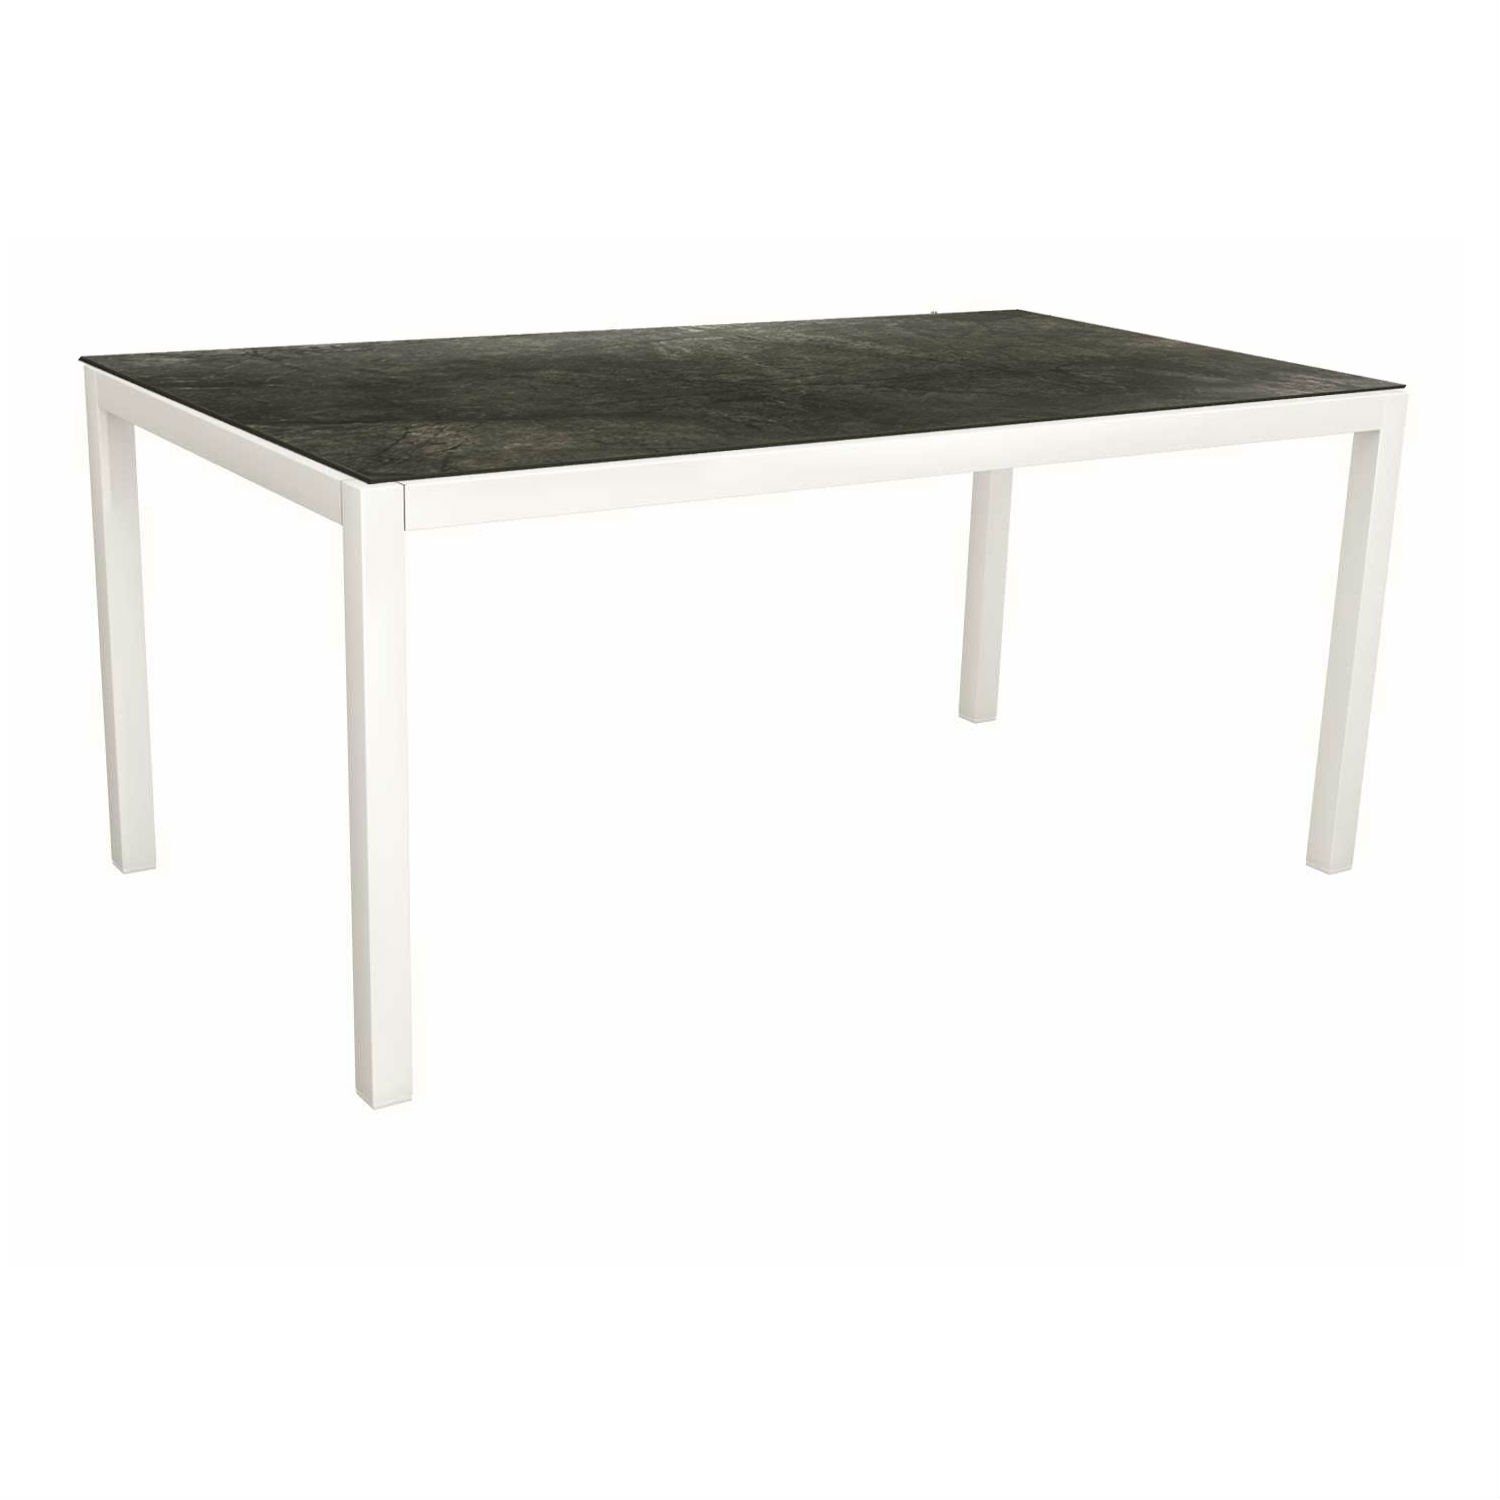 Stern Tischsystem, Gestell Aluminium weiß, Tischplatte HPL Dark Marble, Größe: 130x80 cm